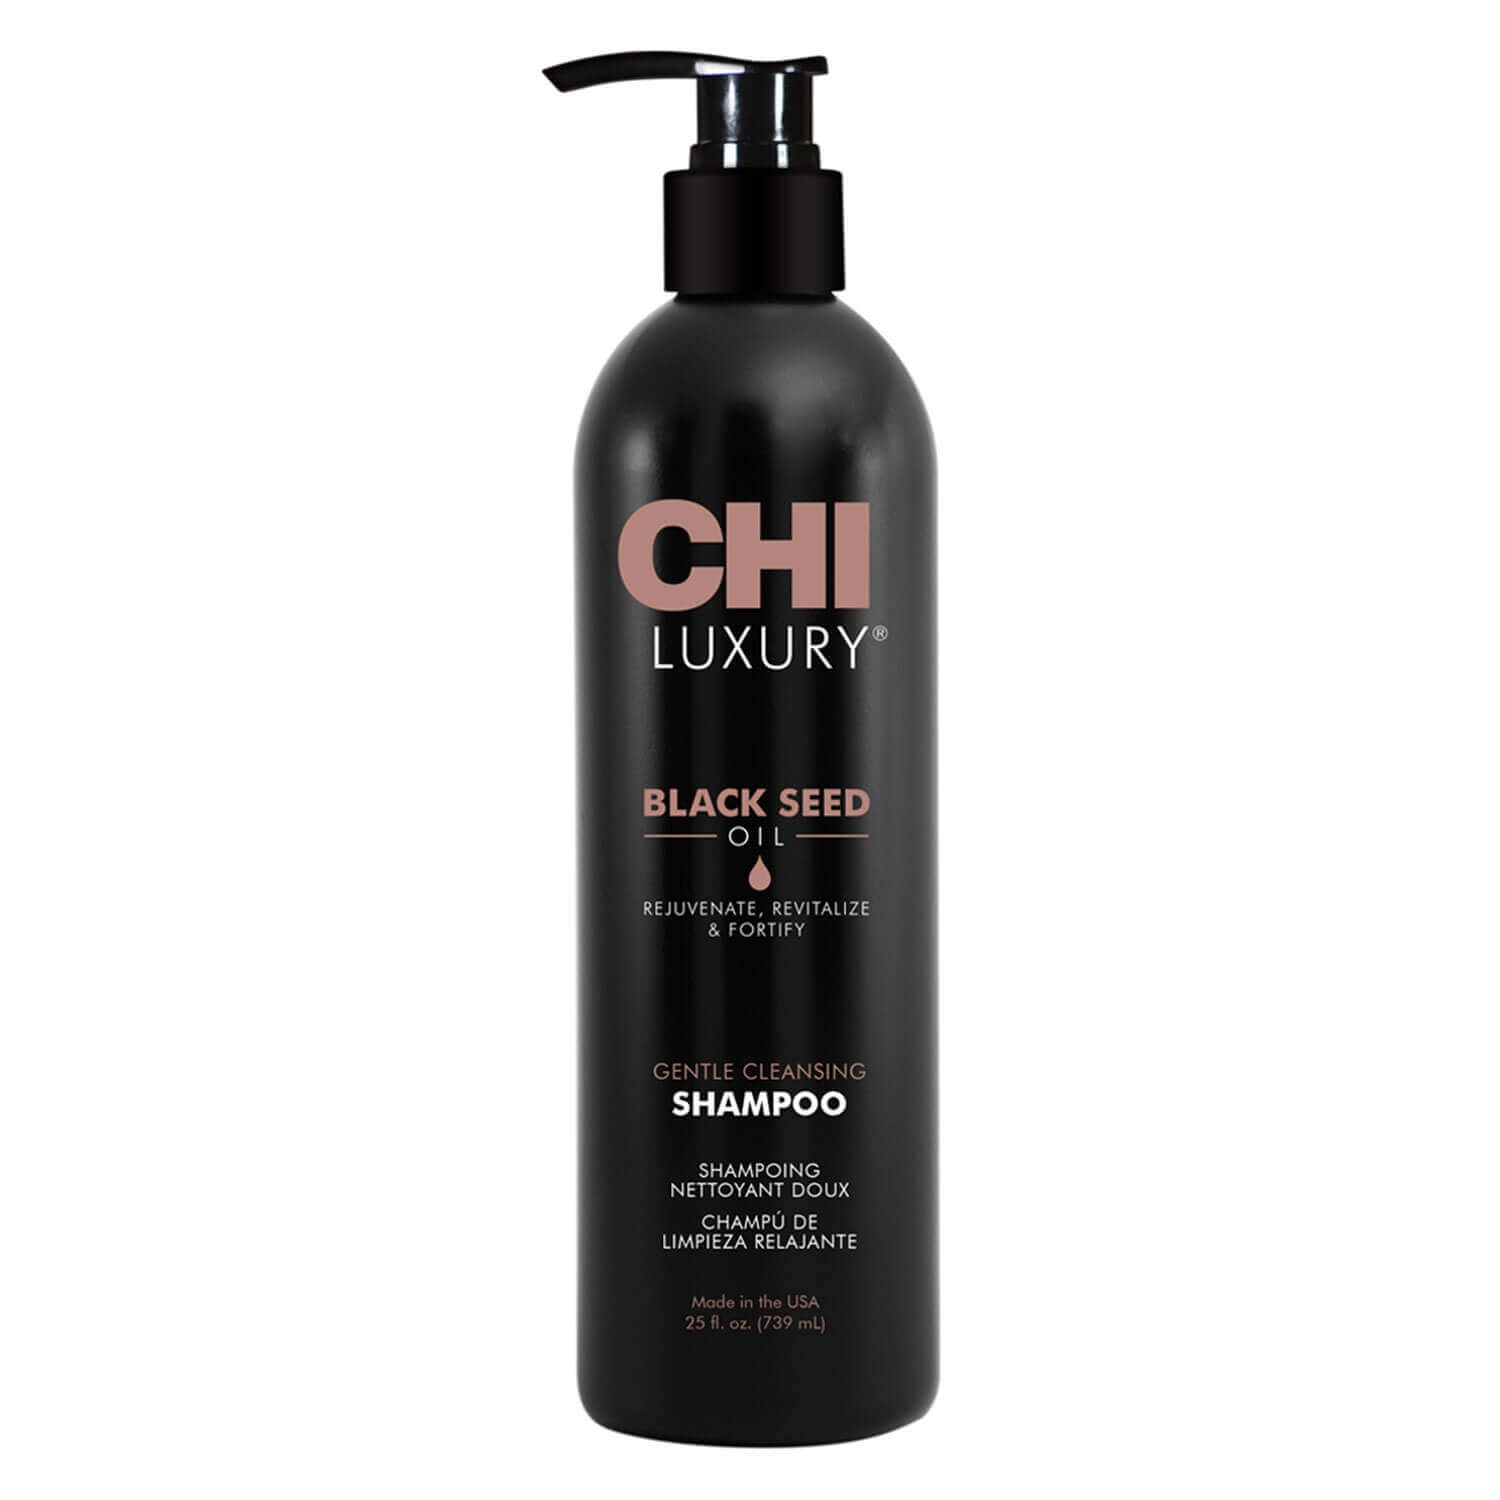 Produktbild von Luxury Black Seed - Gentle Cleansing Shampoo